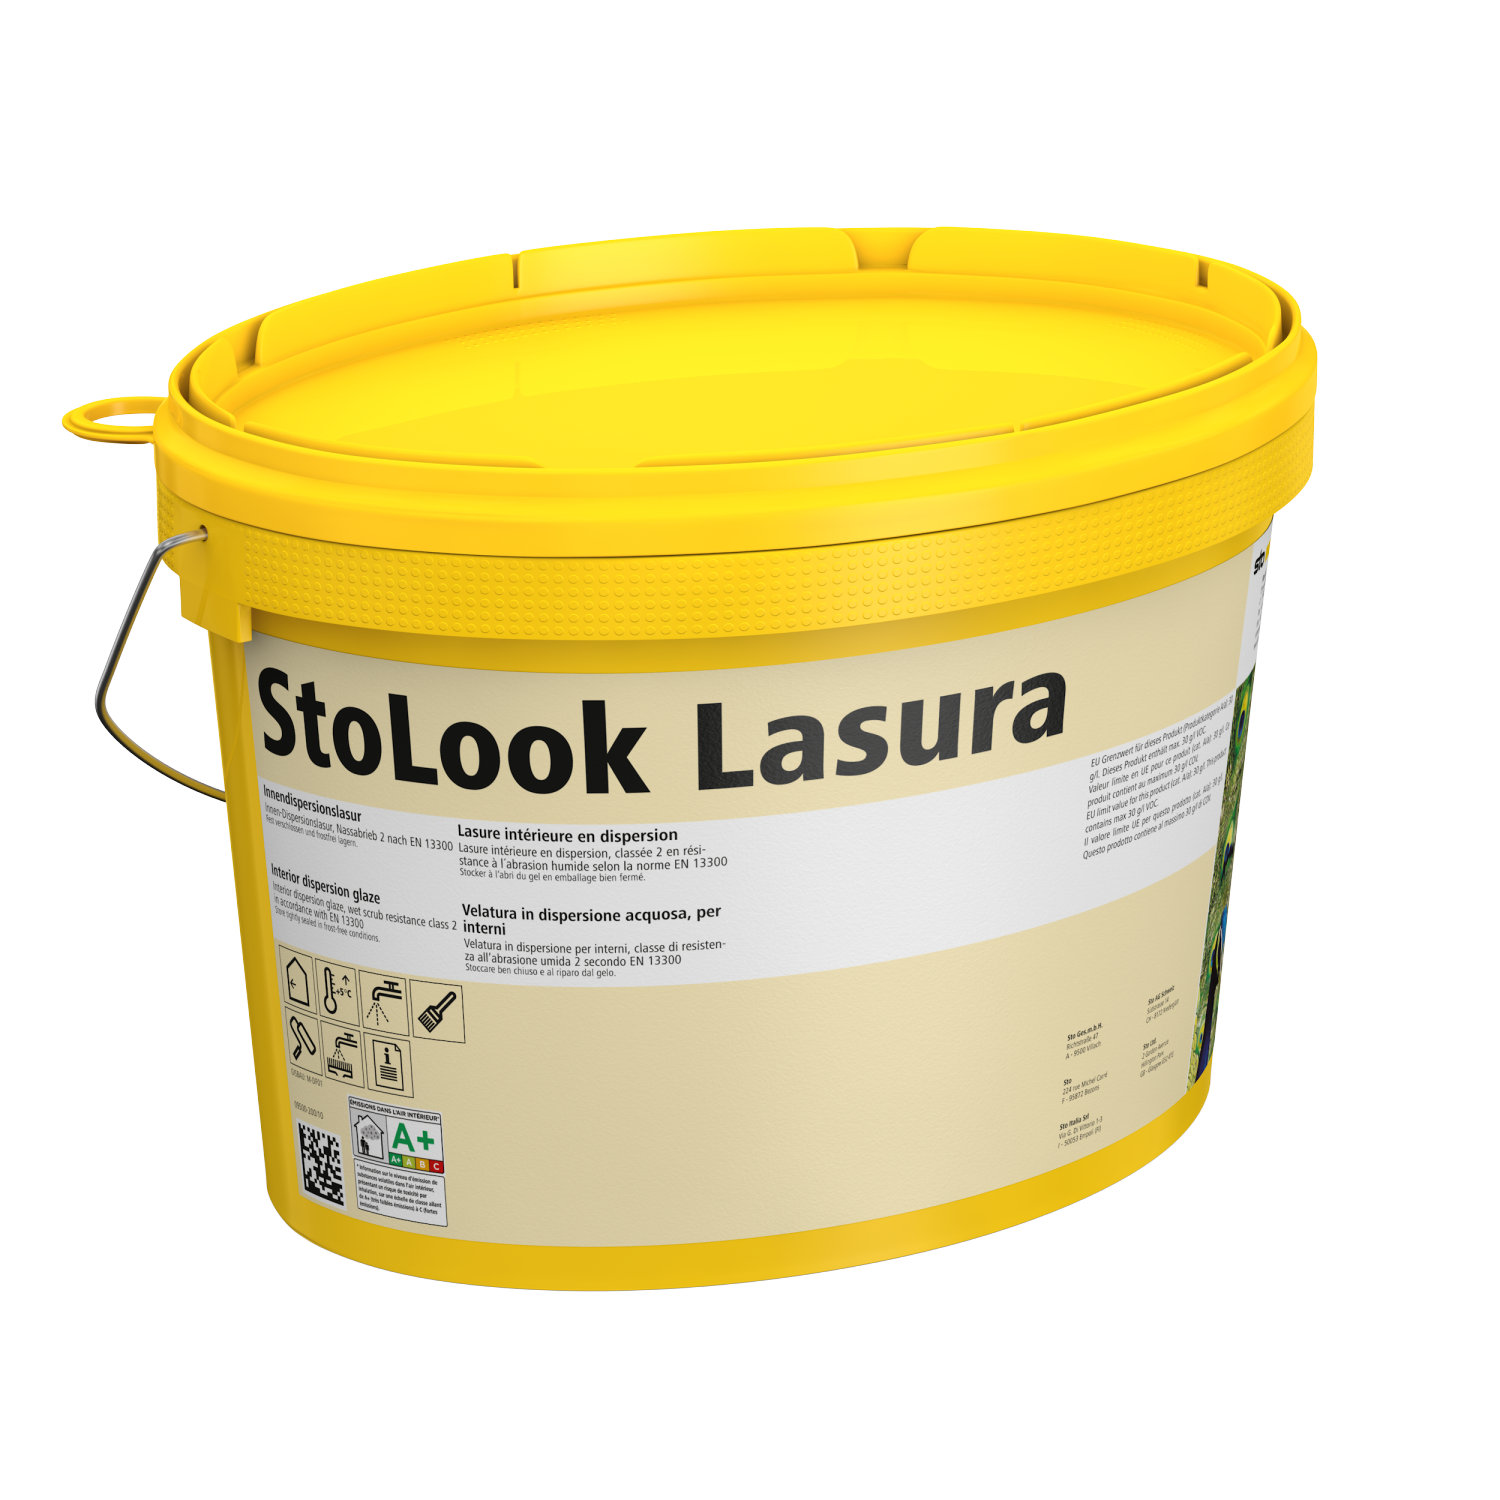 StoLookLasura-1.jpeg